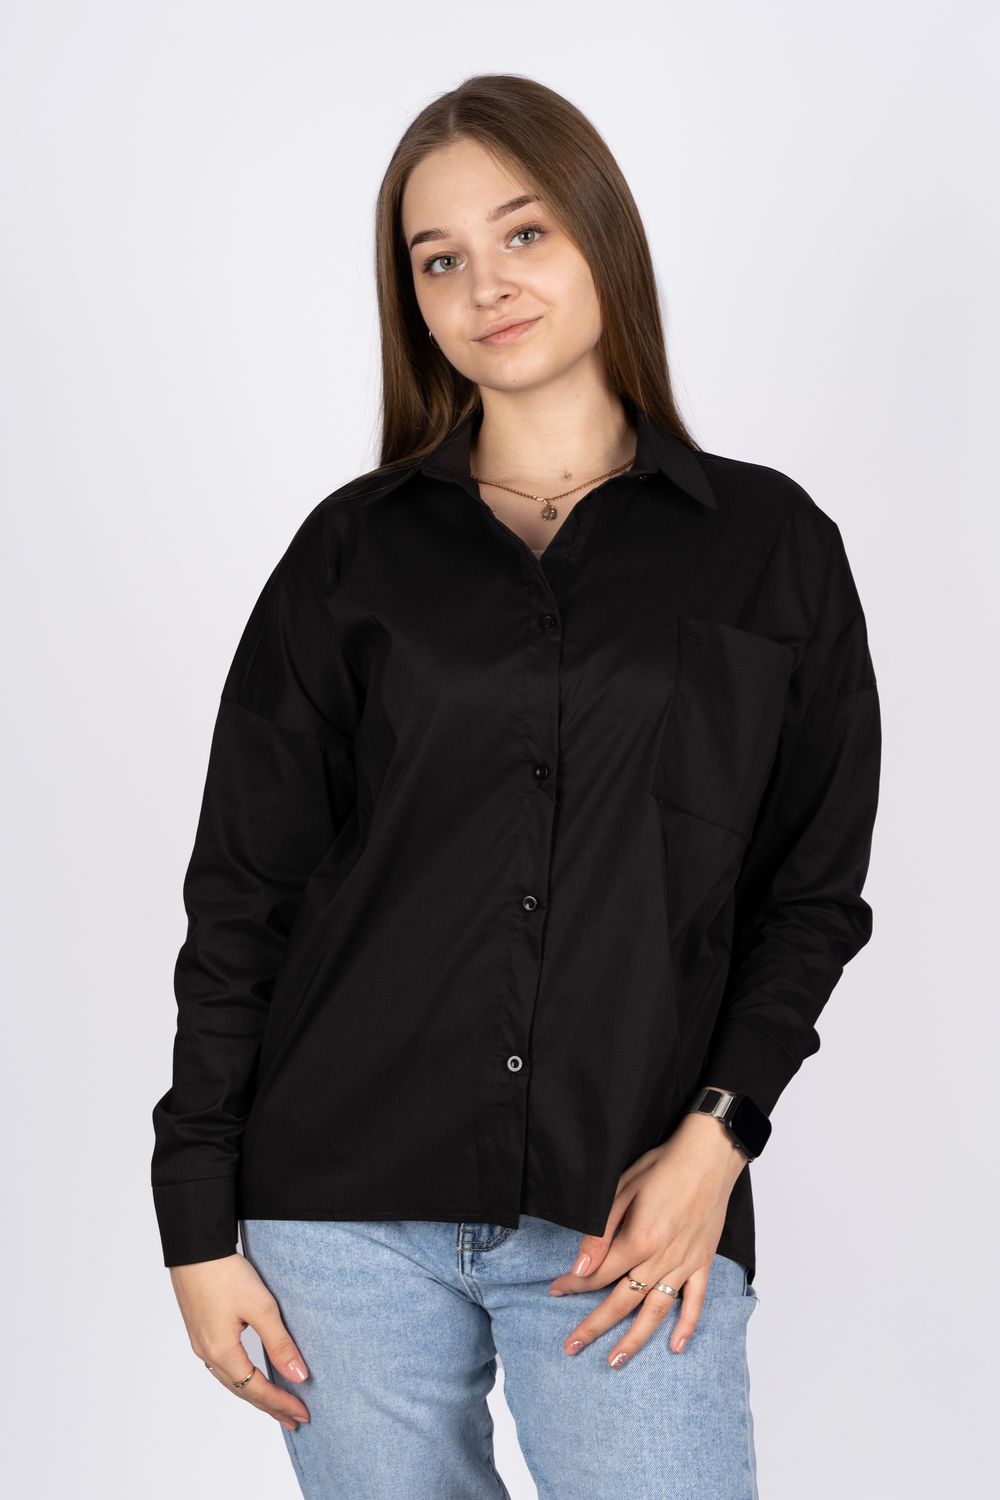 Джемпер (рубашка) женский 6359 - черный